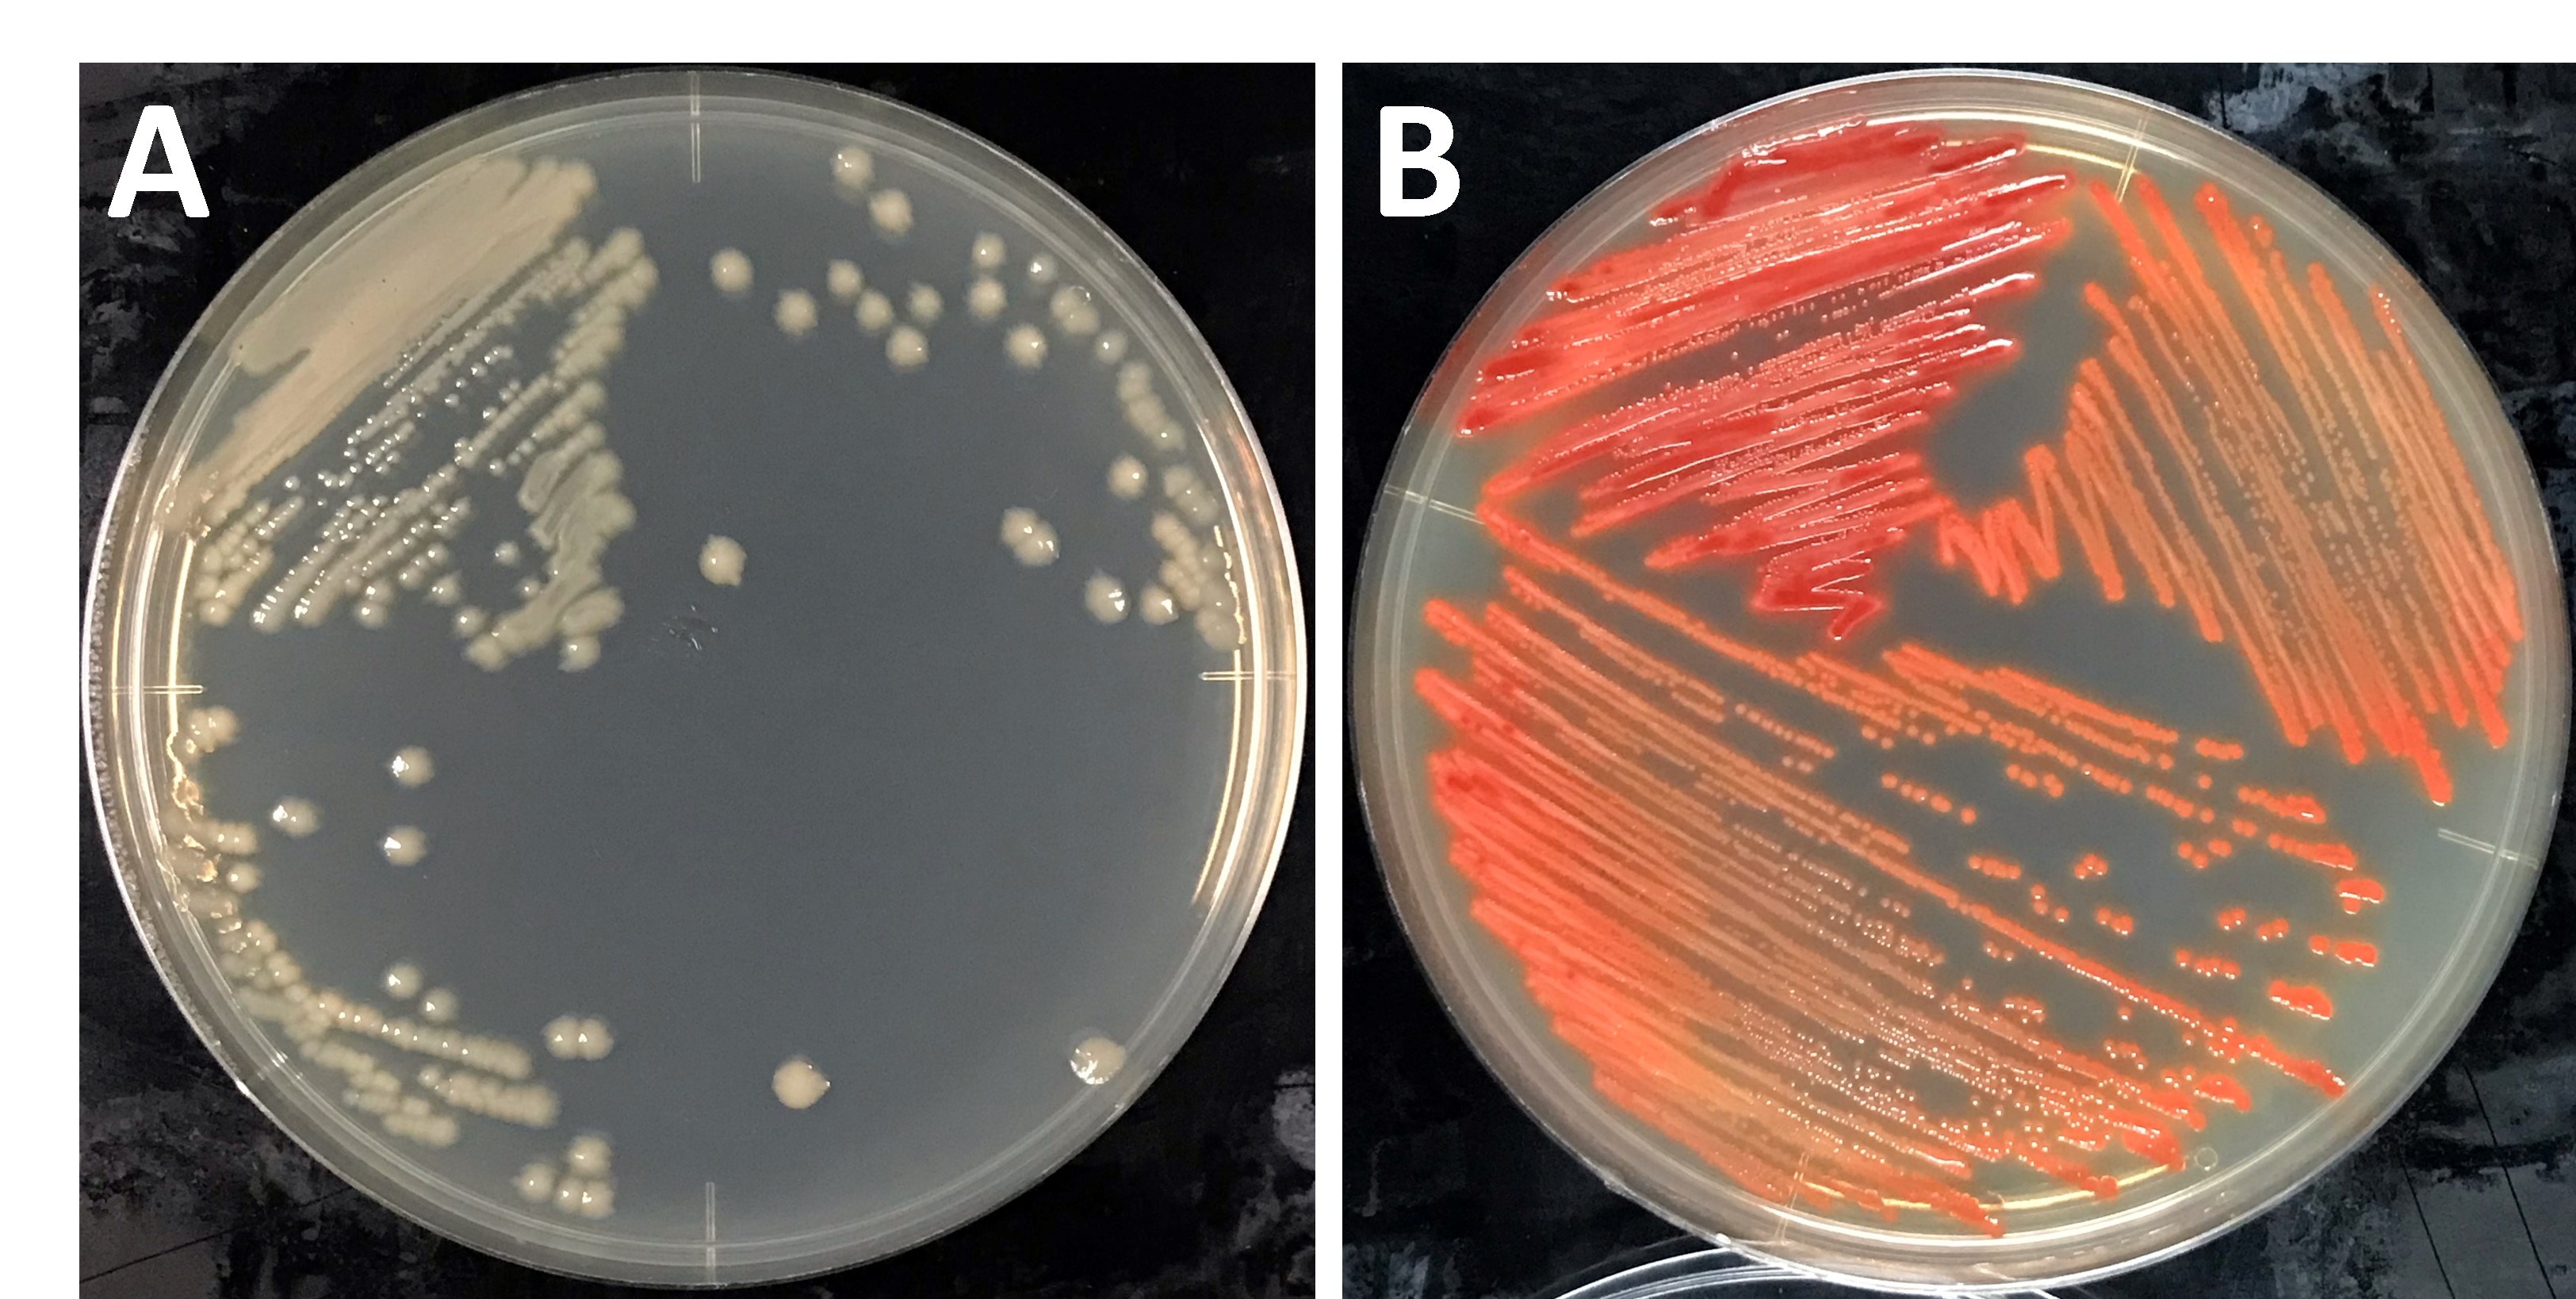 セレン代謝細菌RP3株の寒天培地上での培養の様子。セレンを含まない培地上(A)とセレンを含む培地上(B)での様子を比較すると、セレンを含む培地(B)では、RP3株がセレンを代謝することにより、赤色の単体セレンが生成していることがわかります。